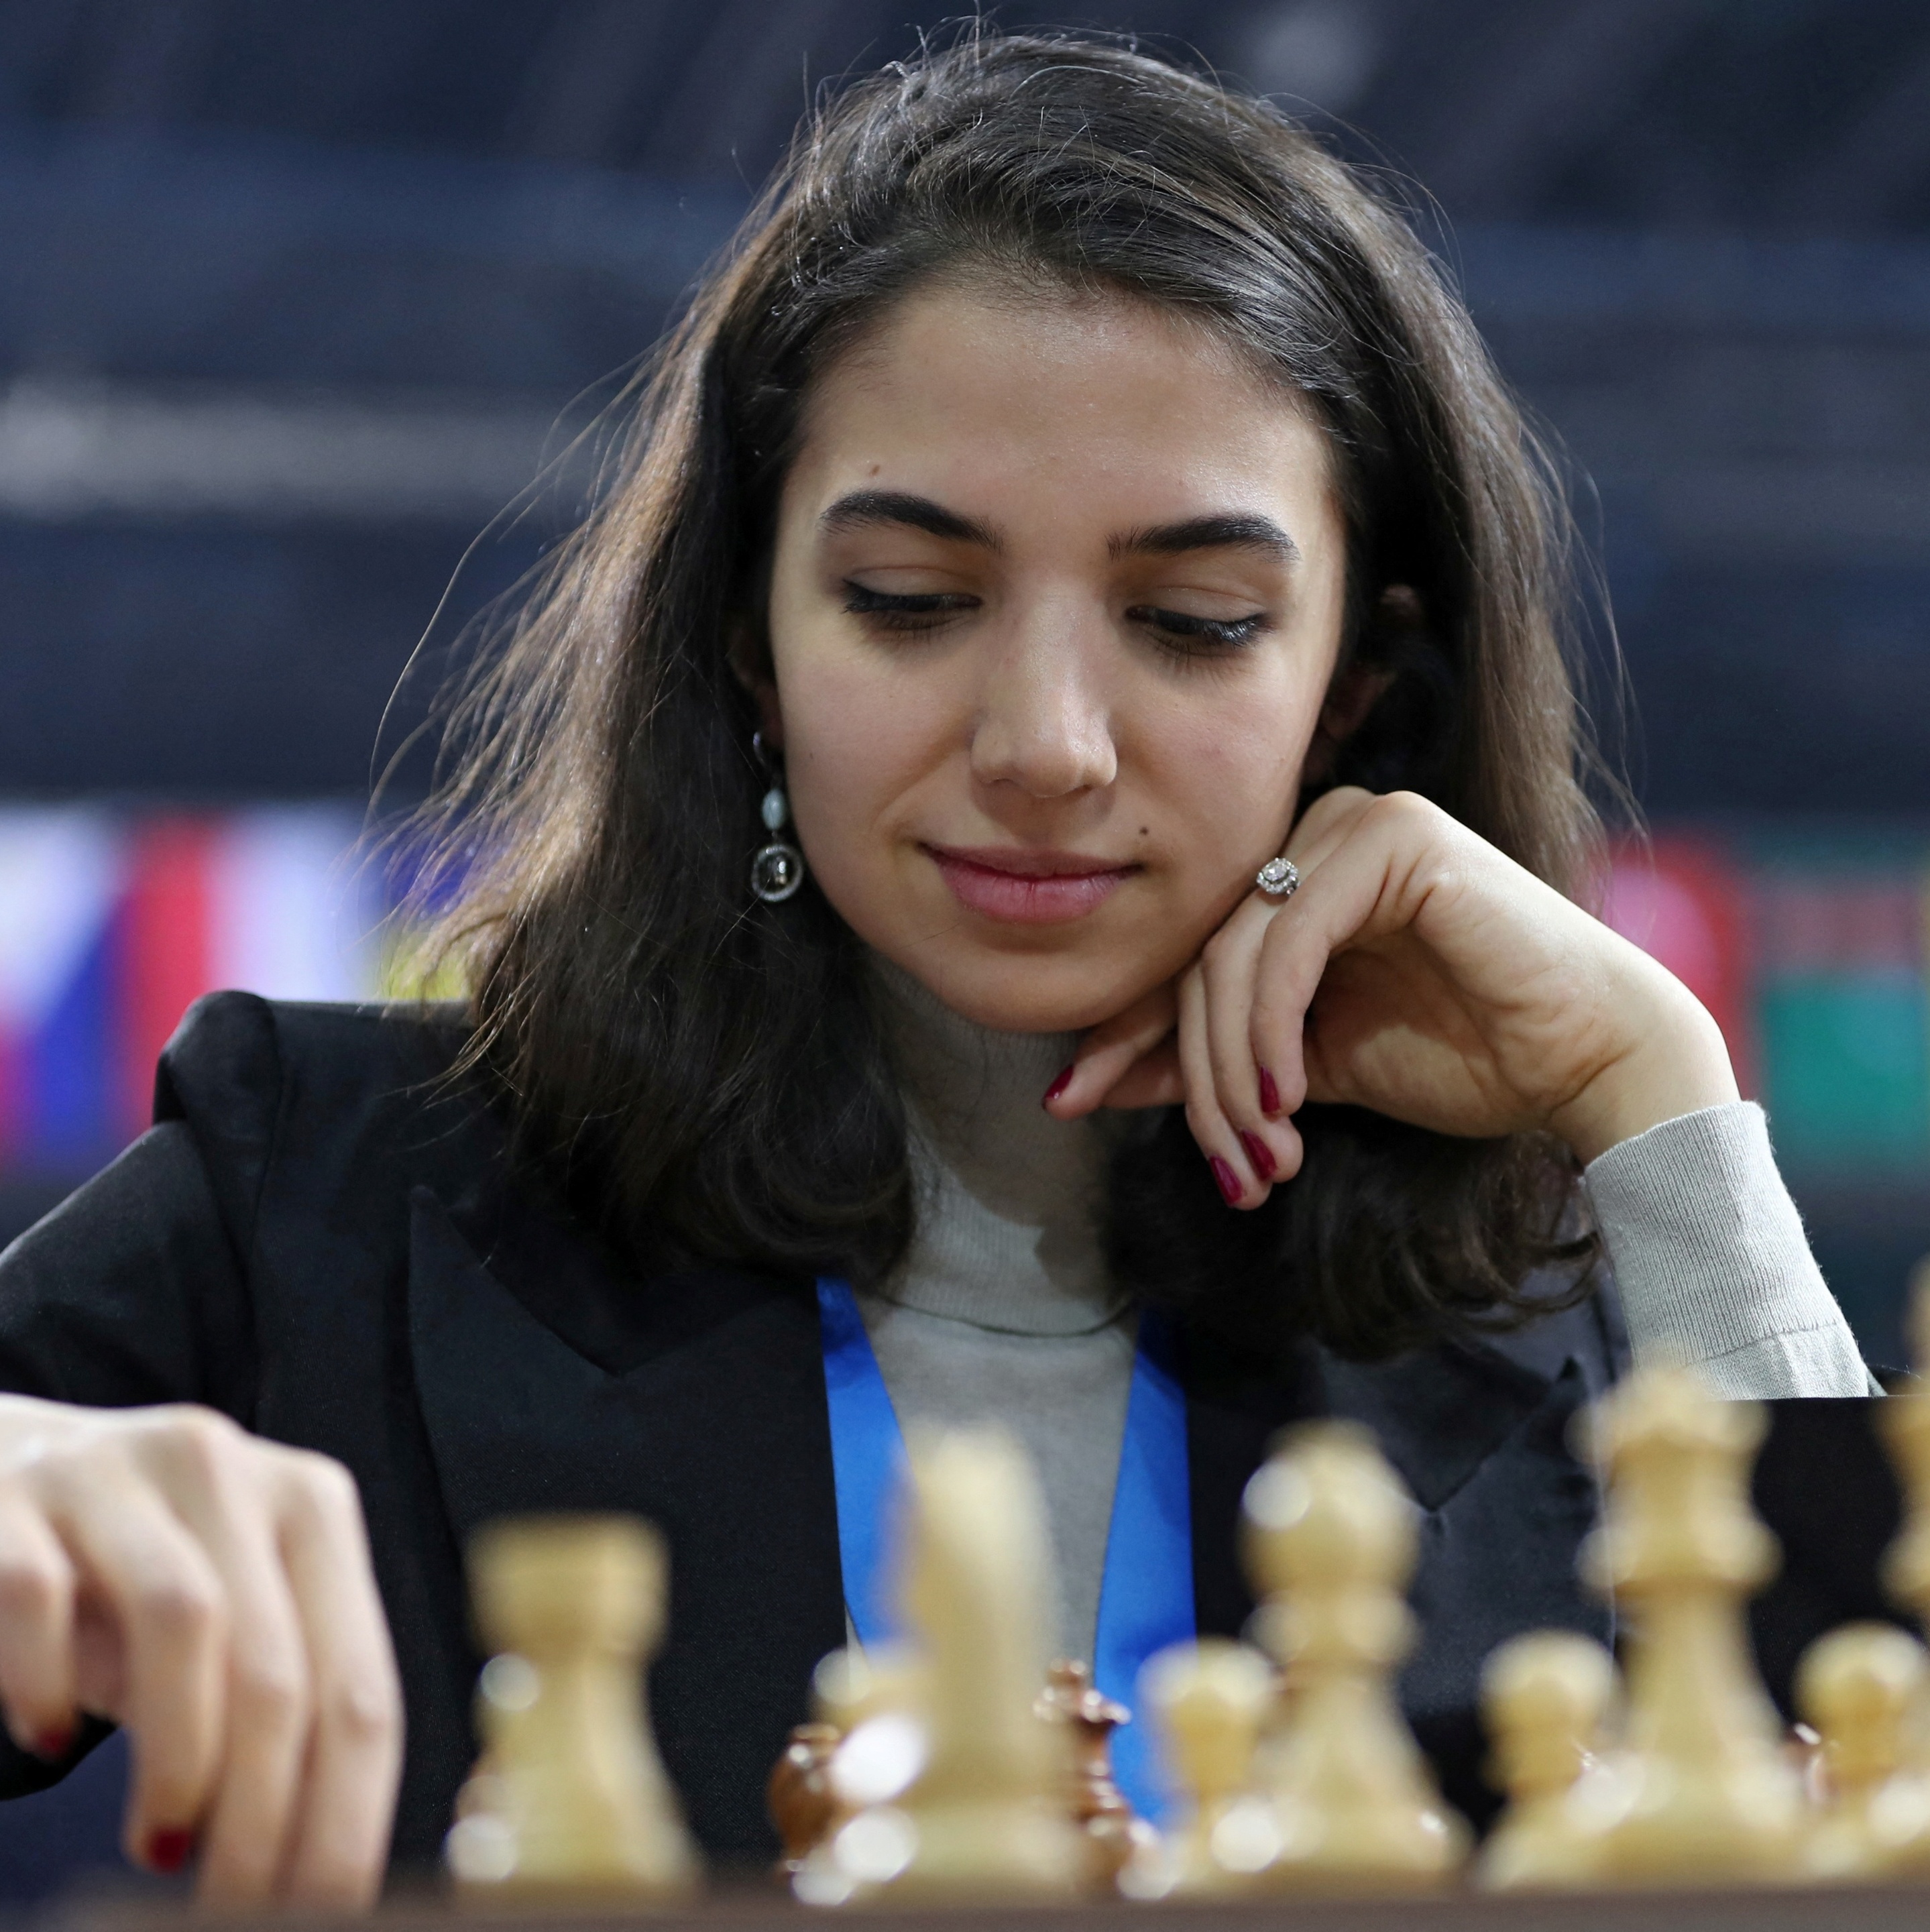 Mulher iraniana compete em torneio de xadrez sem hijab